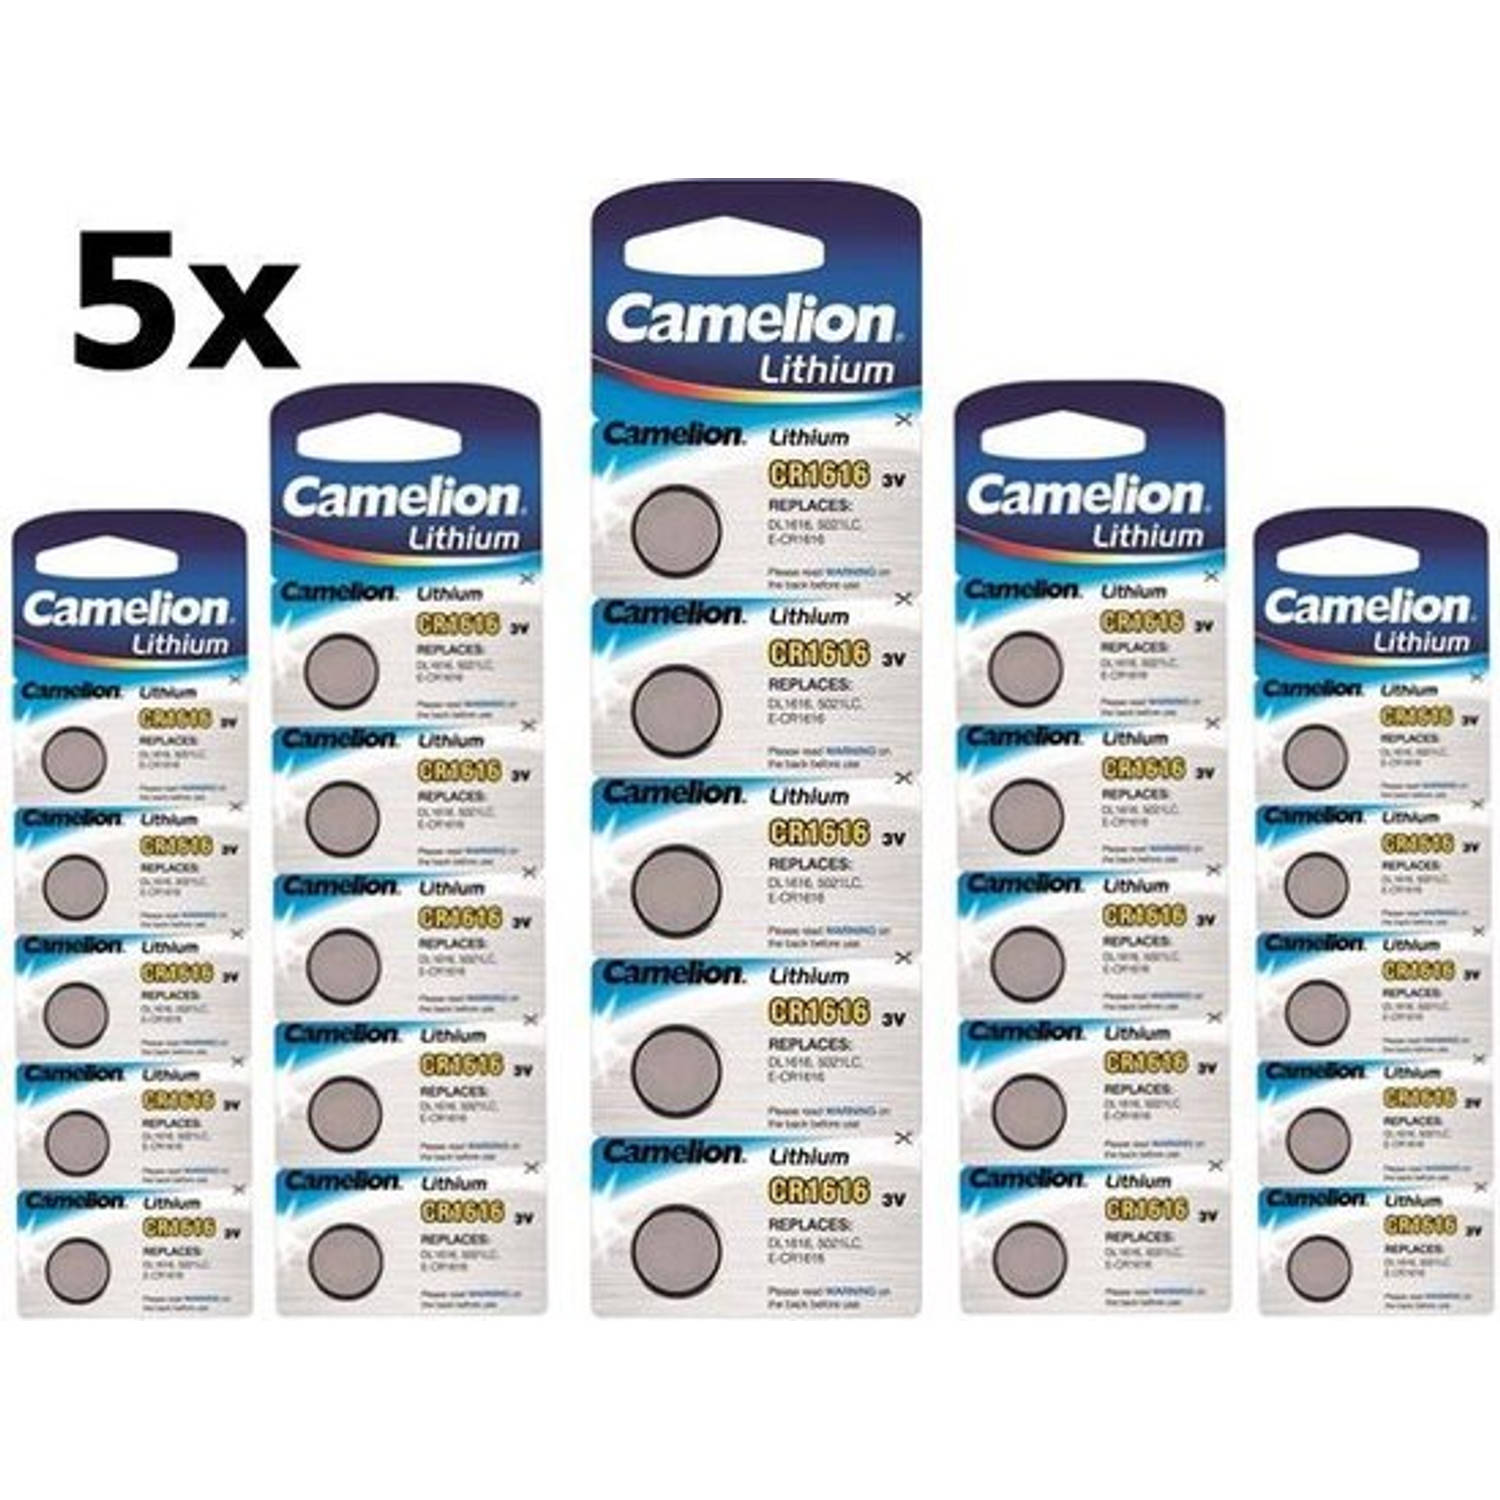 25 Stuks (5 Blister a 5st) Camelion CR1616 3v lithium knoopcelbatterij